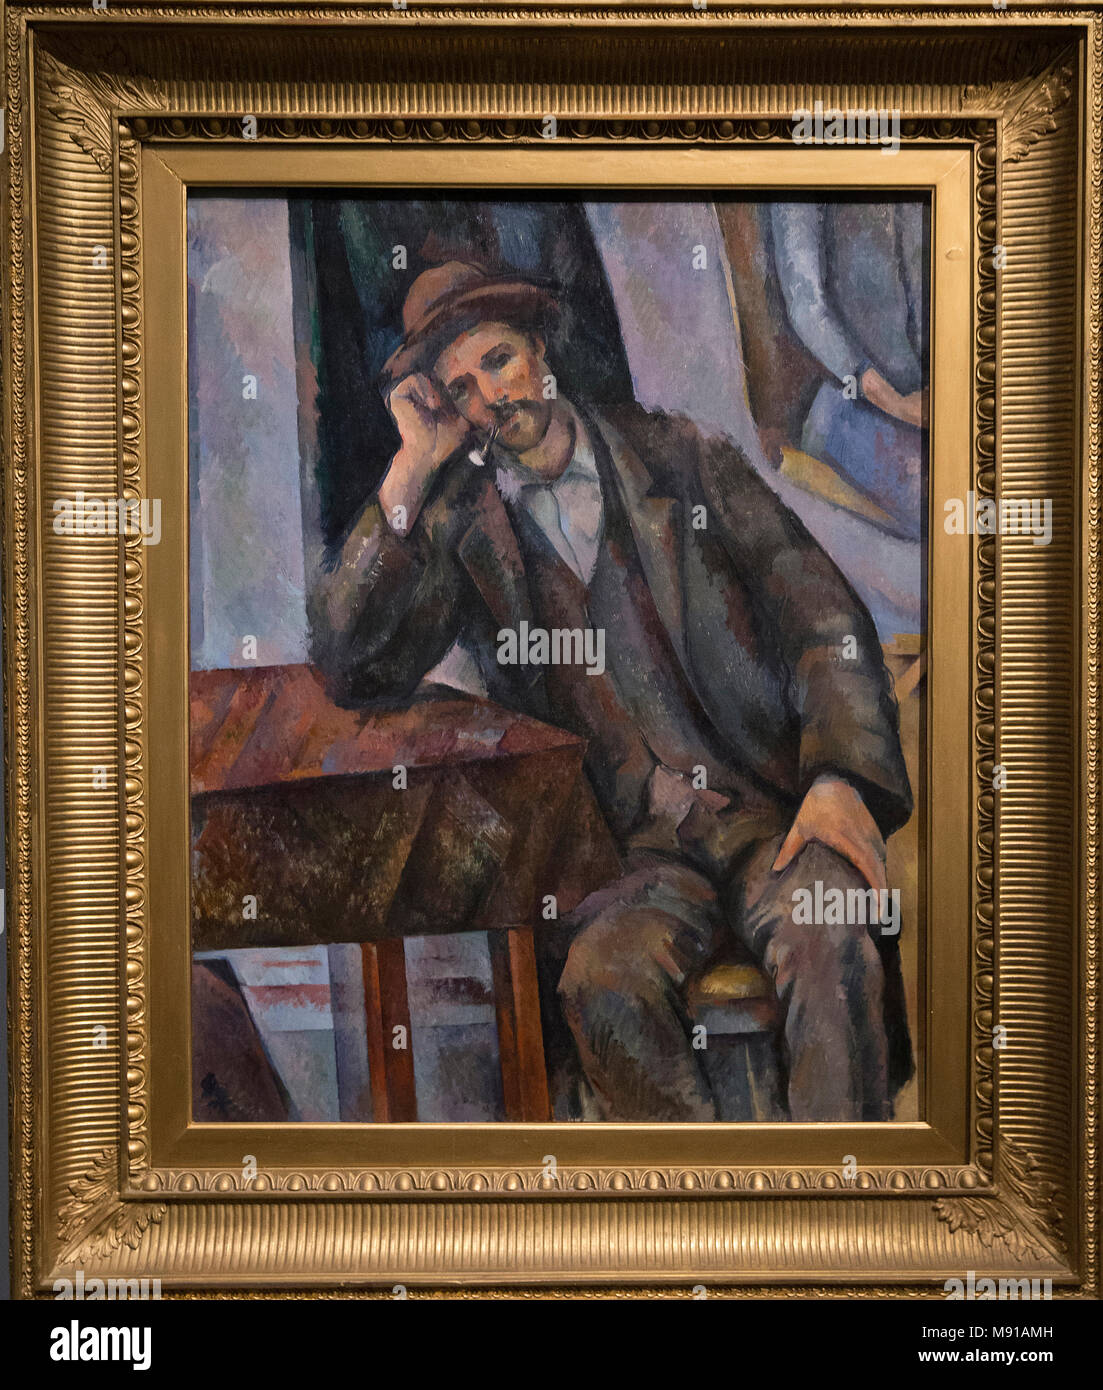 Paul Cezanne, Mann Rauchen einer Pfeife, Aix-en-Provence, 1890-1893, Öl auf Leinwand. Shchukin Sammlung, Puschkin Museum der Schönen Künste, Moskau. Schuss beim exhibite Stockfoto